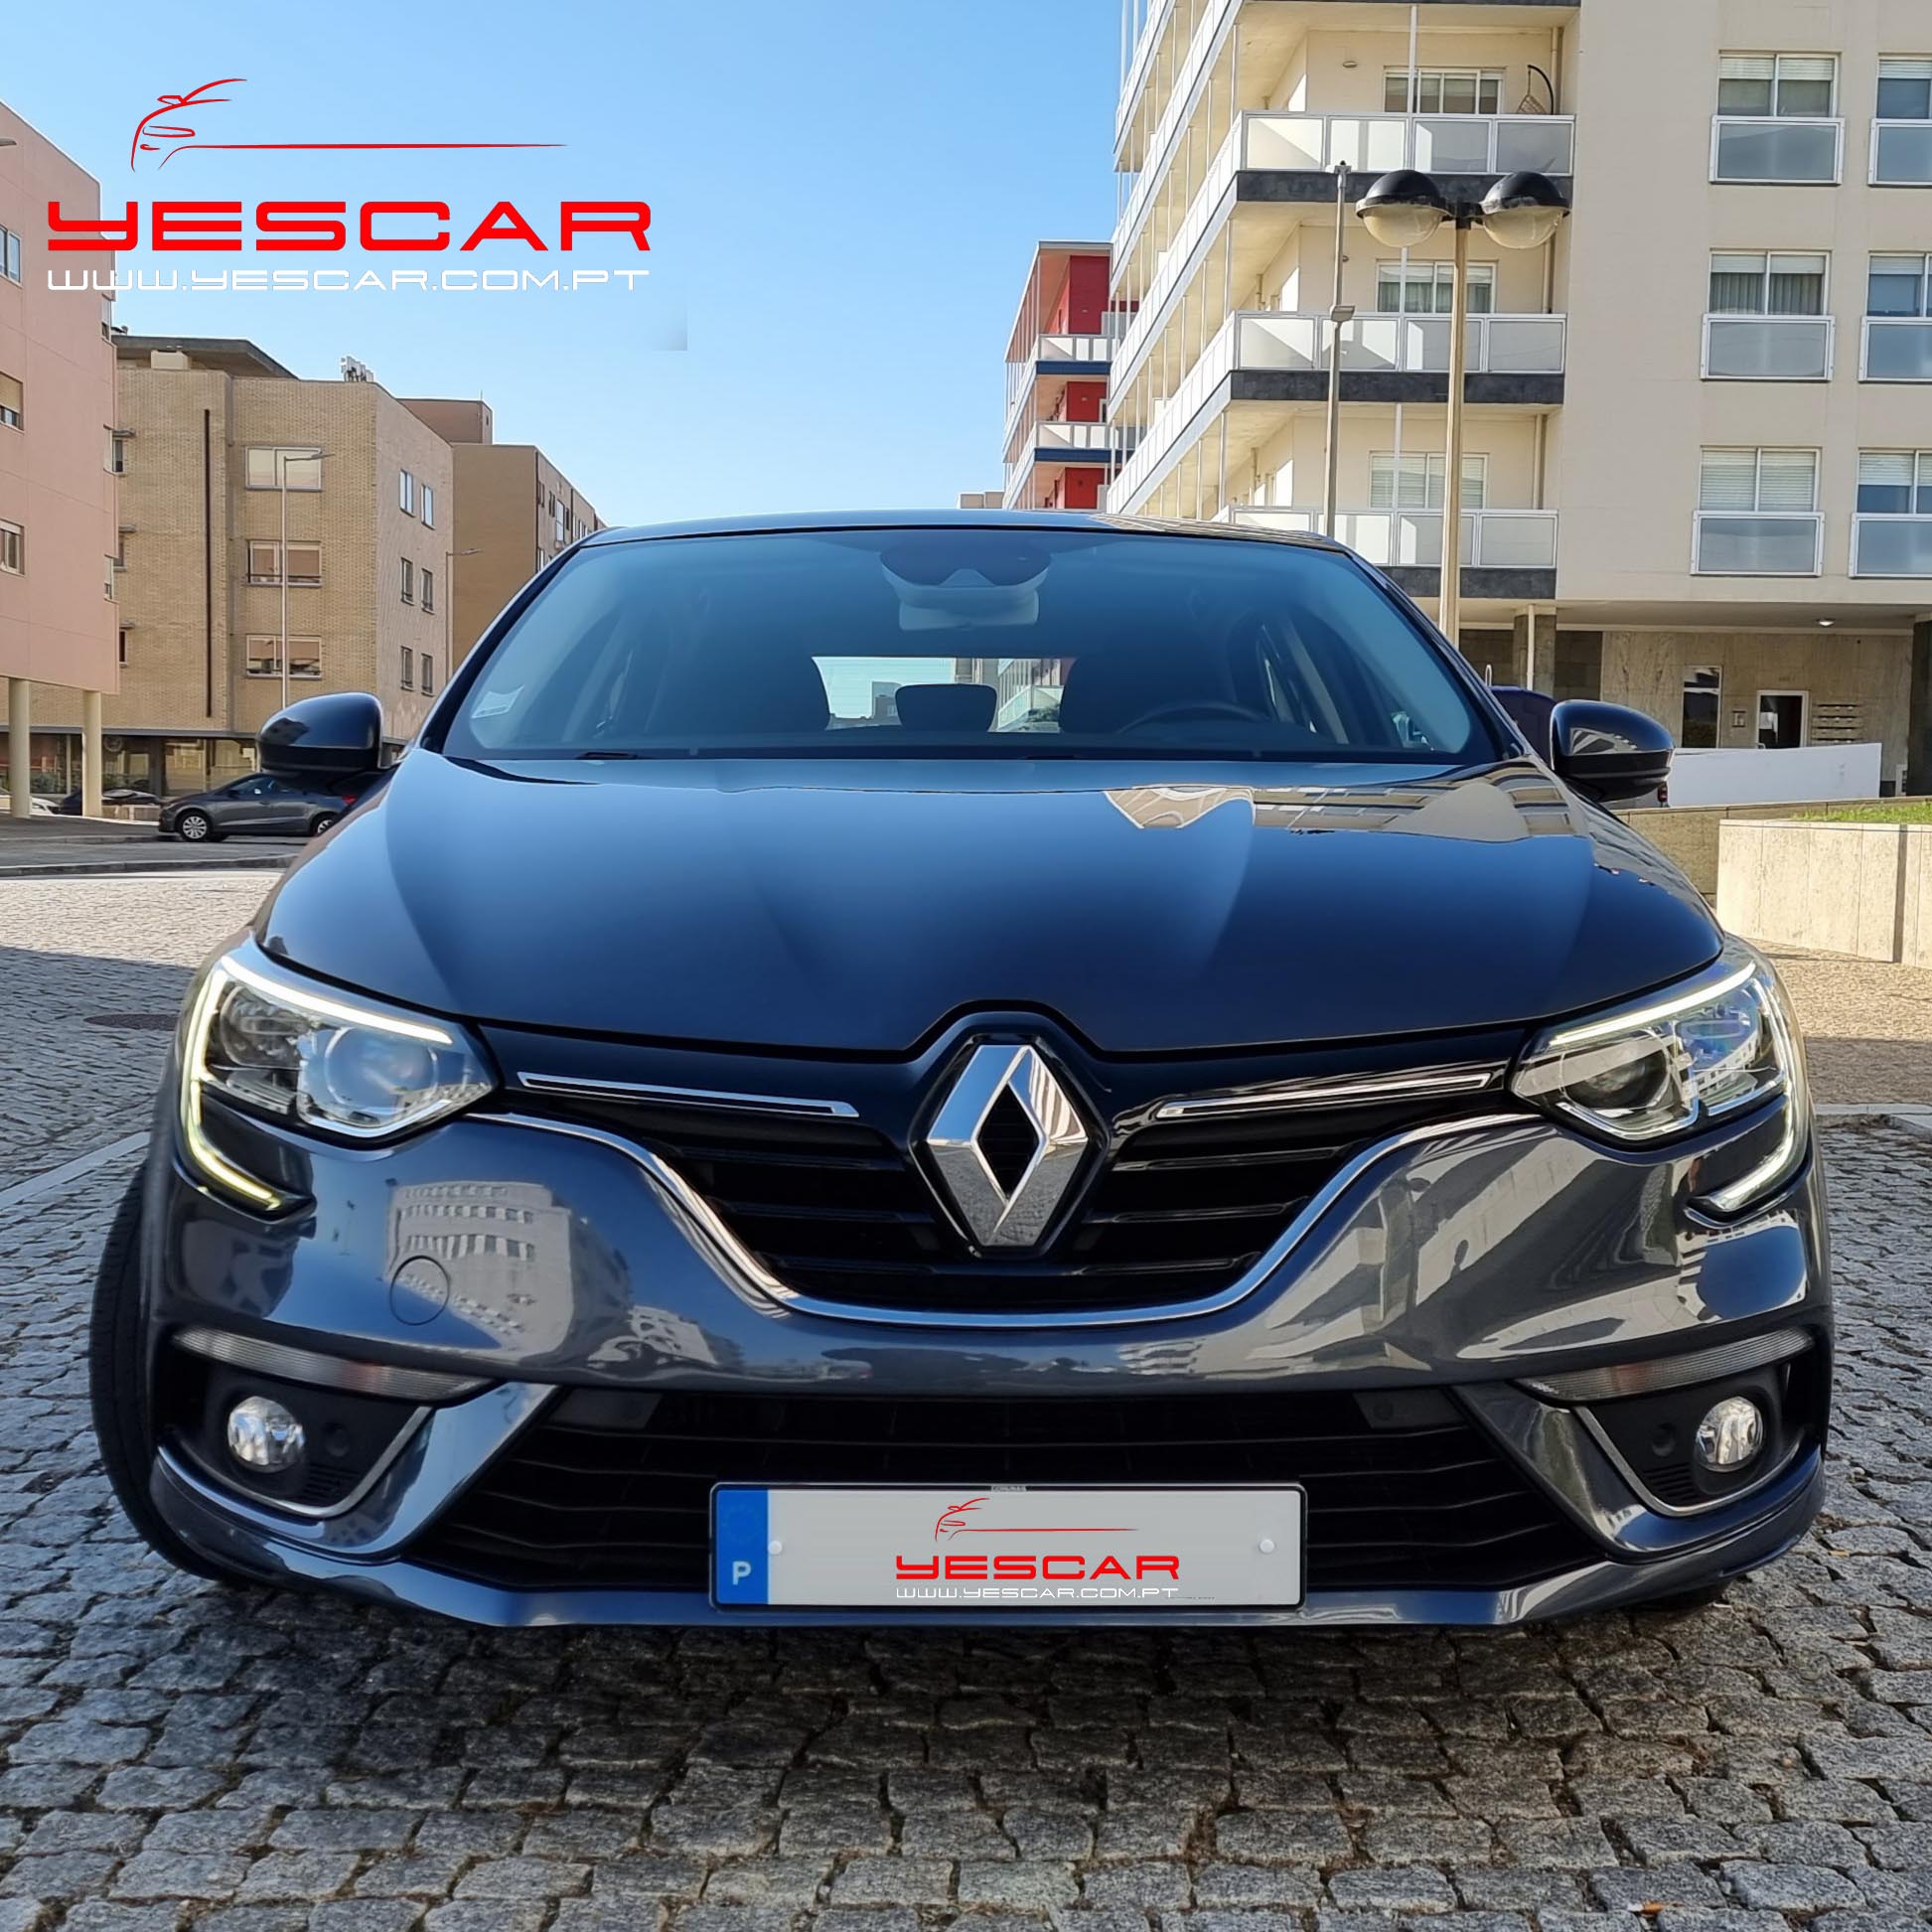 Renault Megane 5portas - YESCAR automoveis (31)